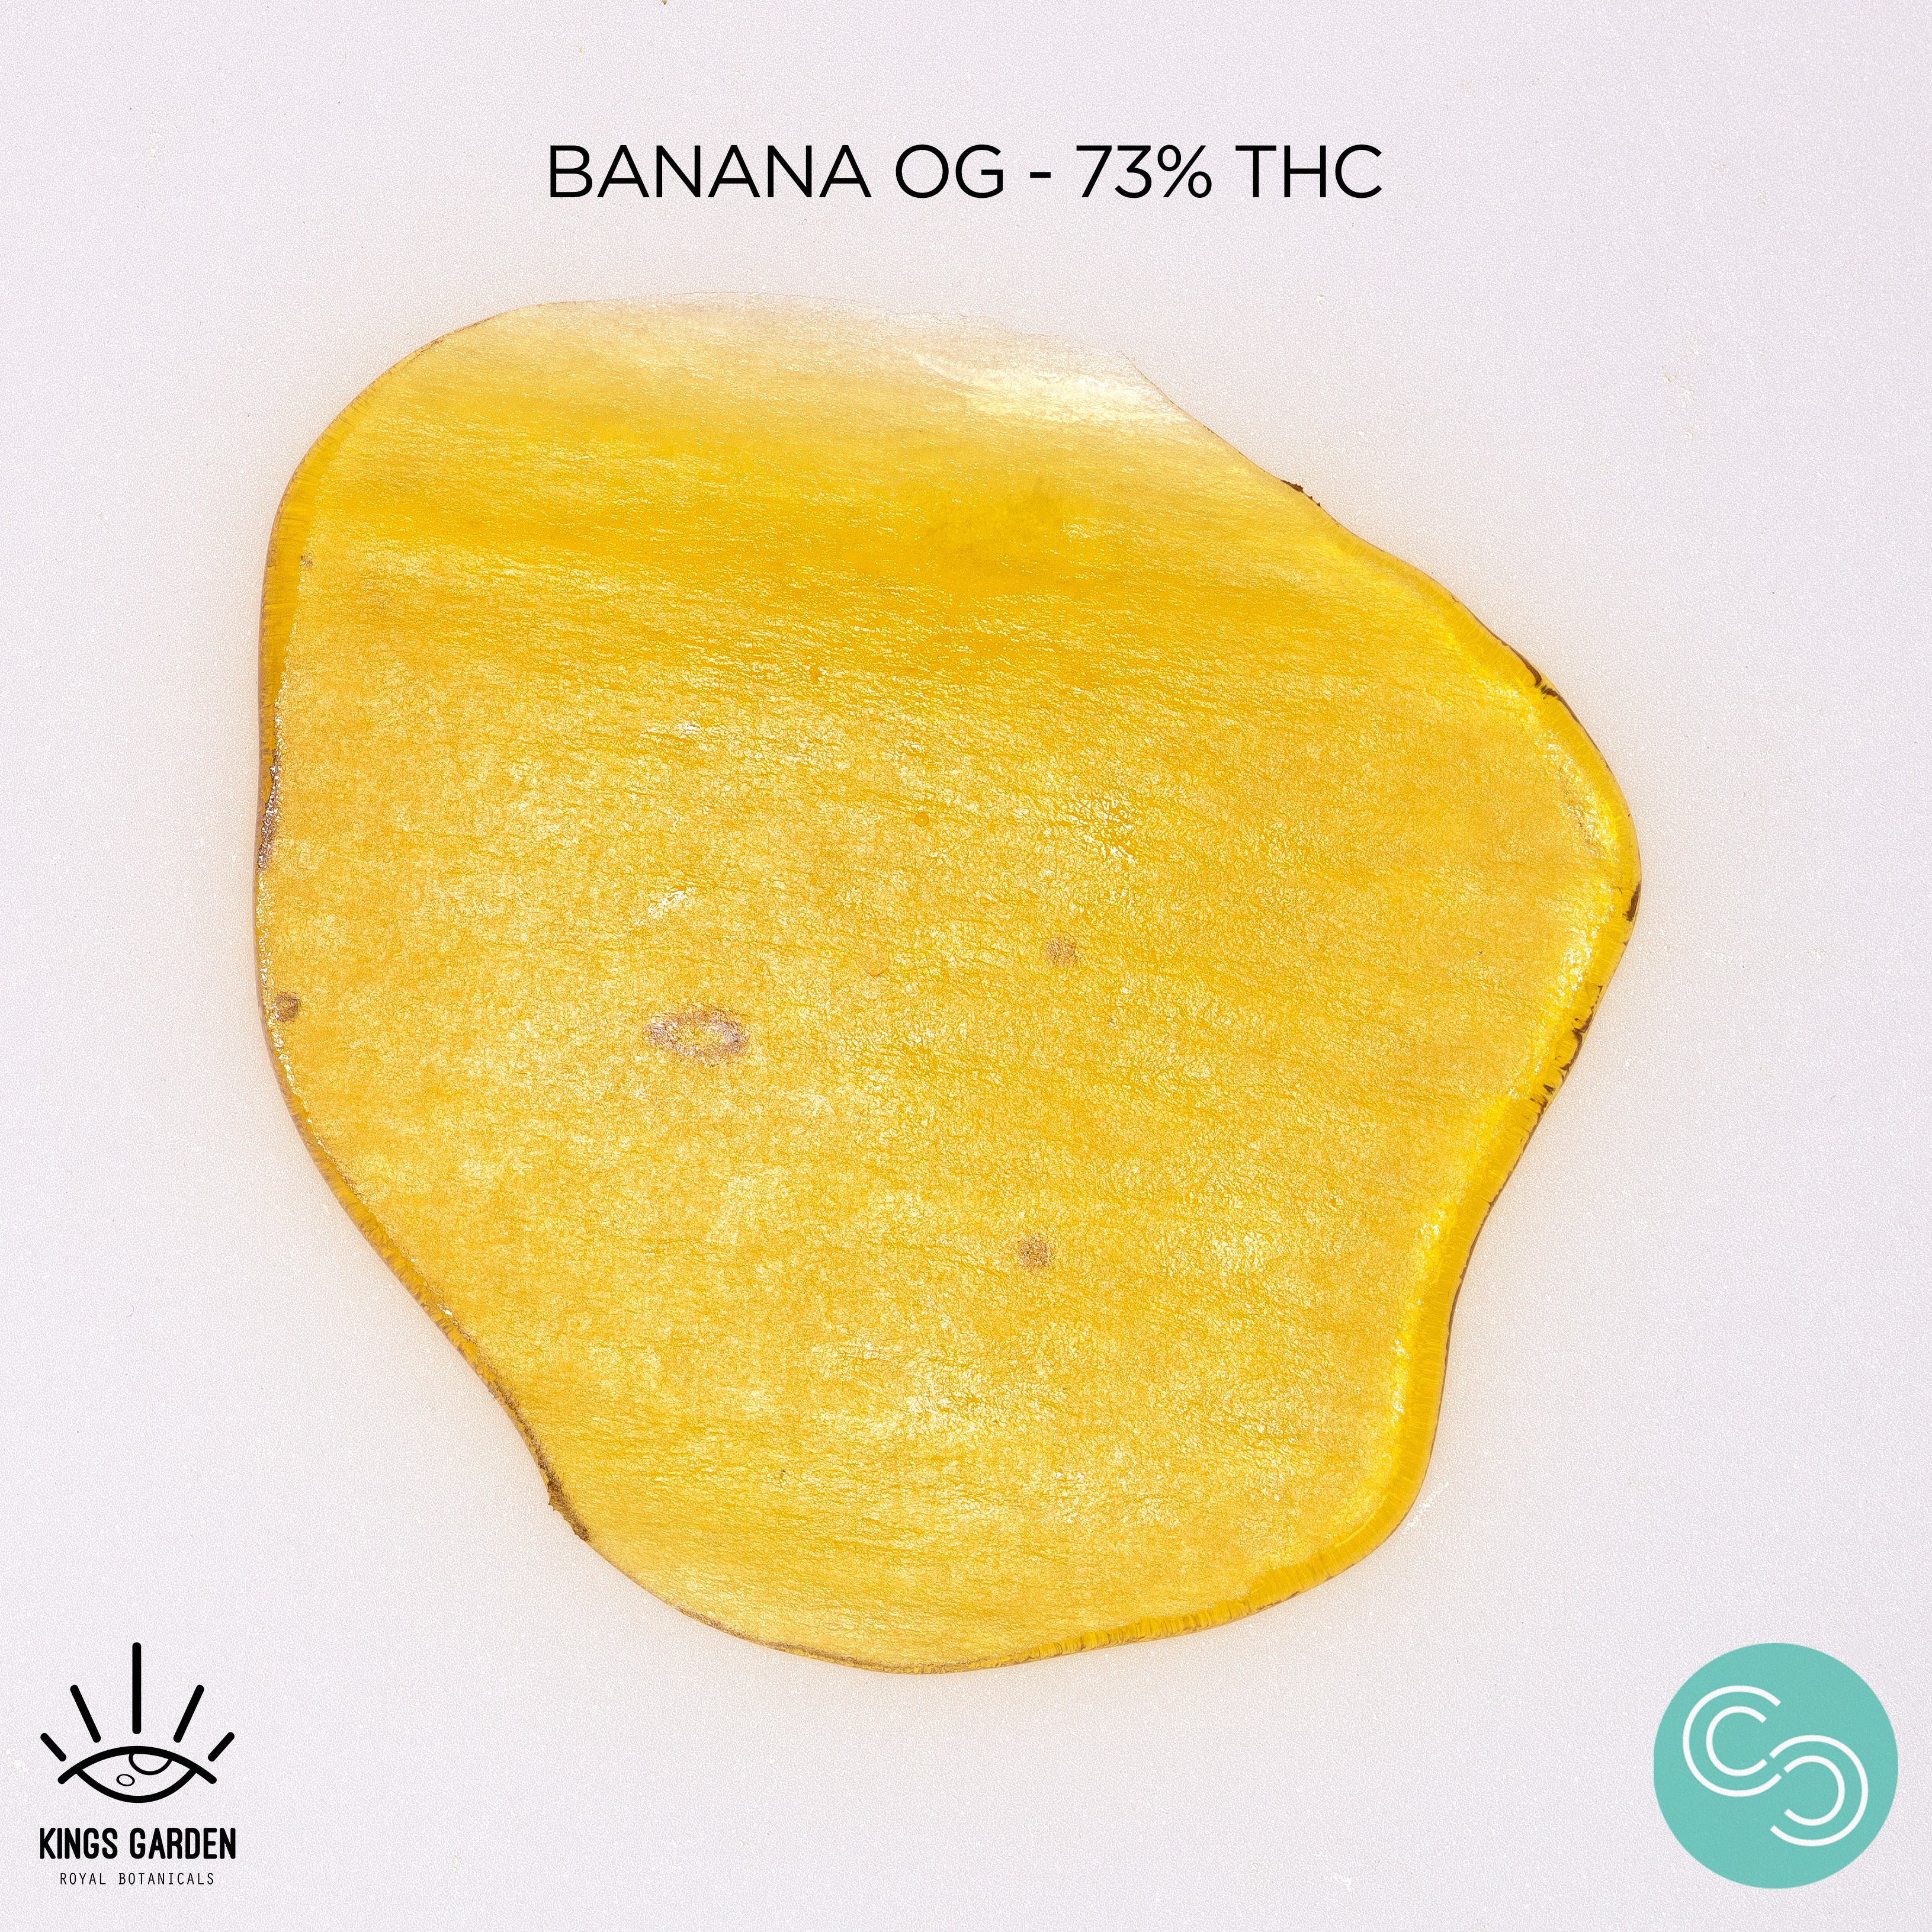 marijuana-dispensaries-114a-otto-circle-sacramento-kings-garden-banana-og-73-25-thc